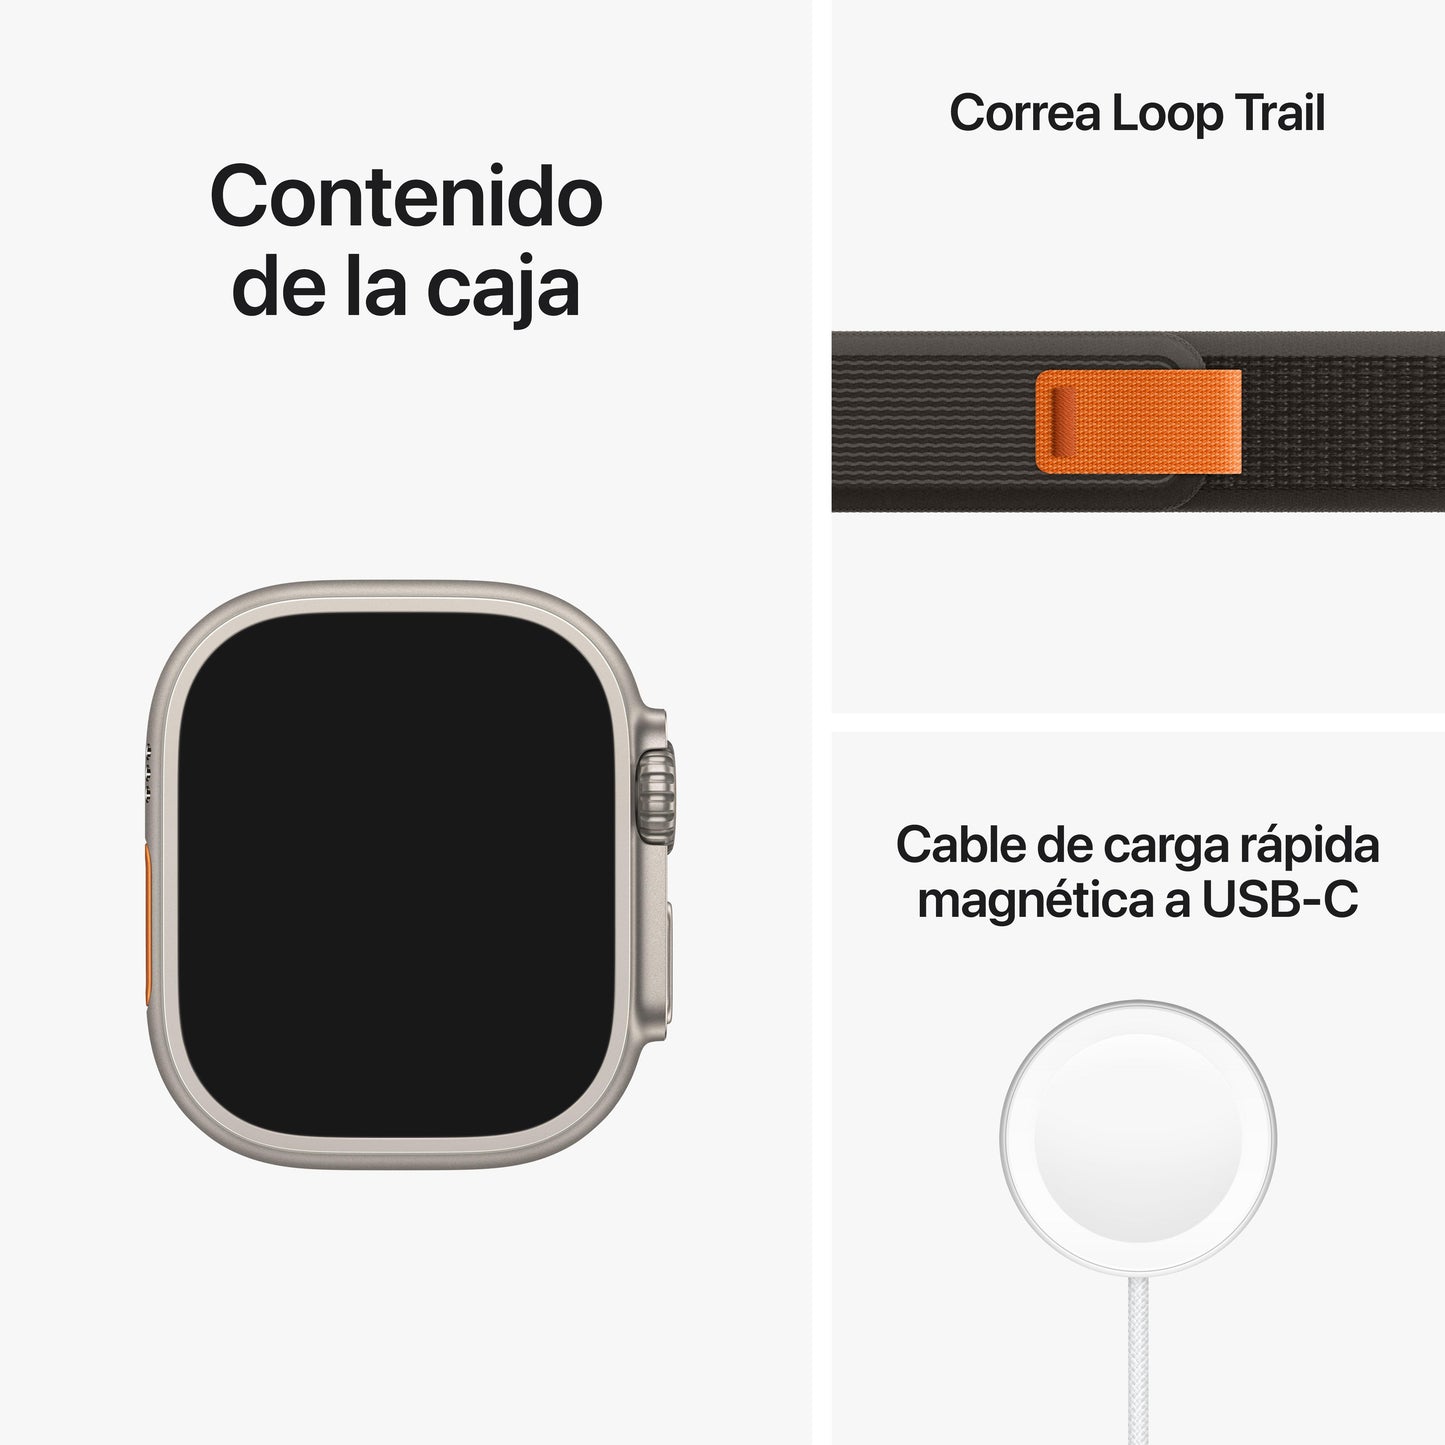 Apple Watch Ultra (GPS + Cellular) - Caja de titanio de 49 mm - Correa Loop Trail negra/gris - Talla S/M